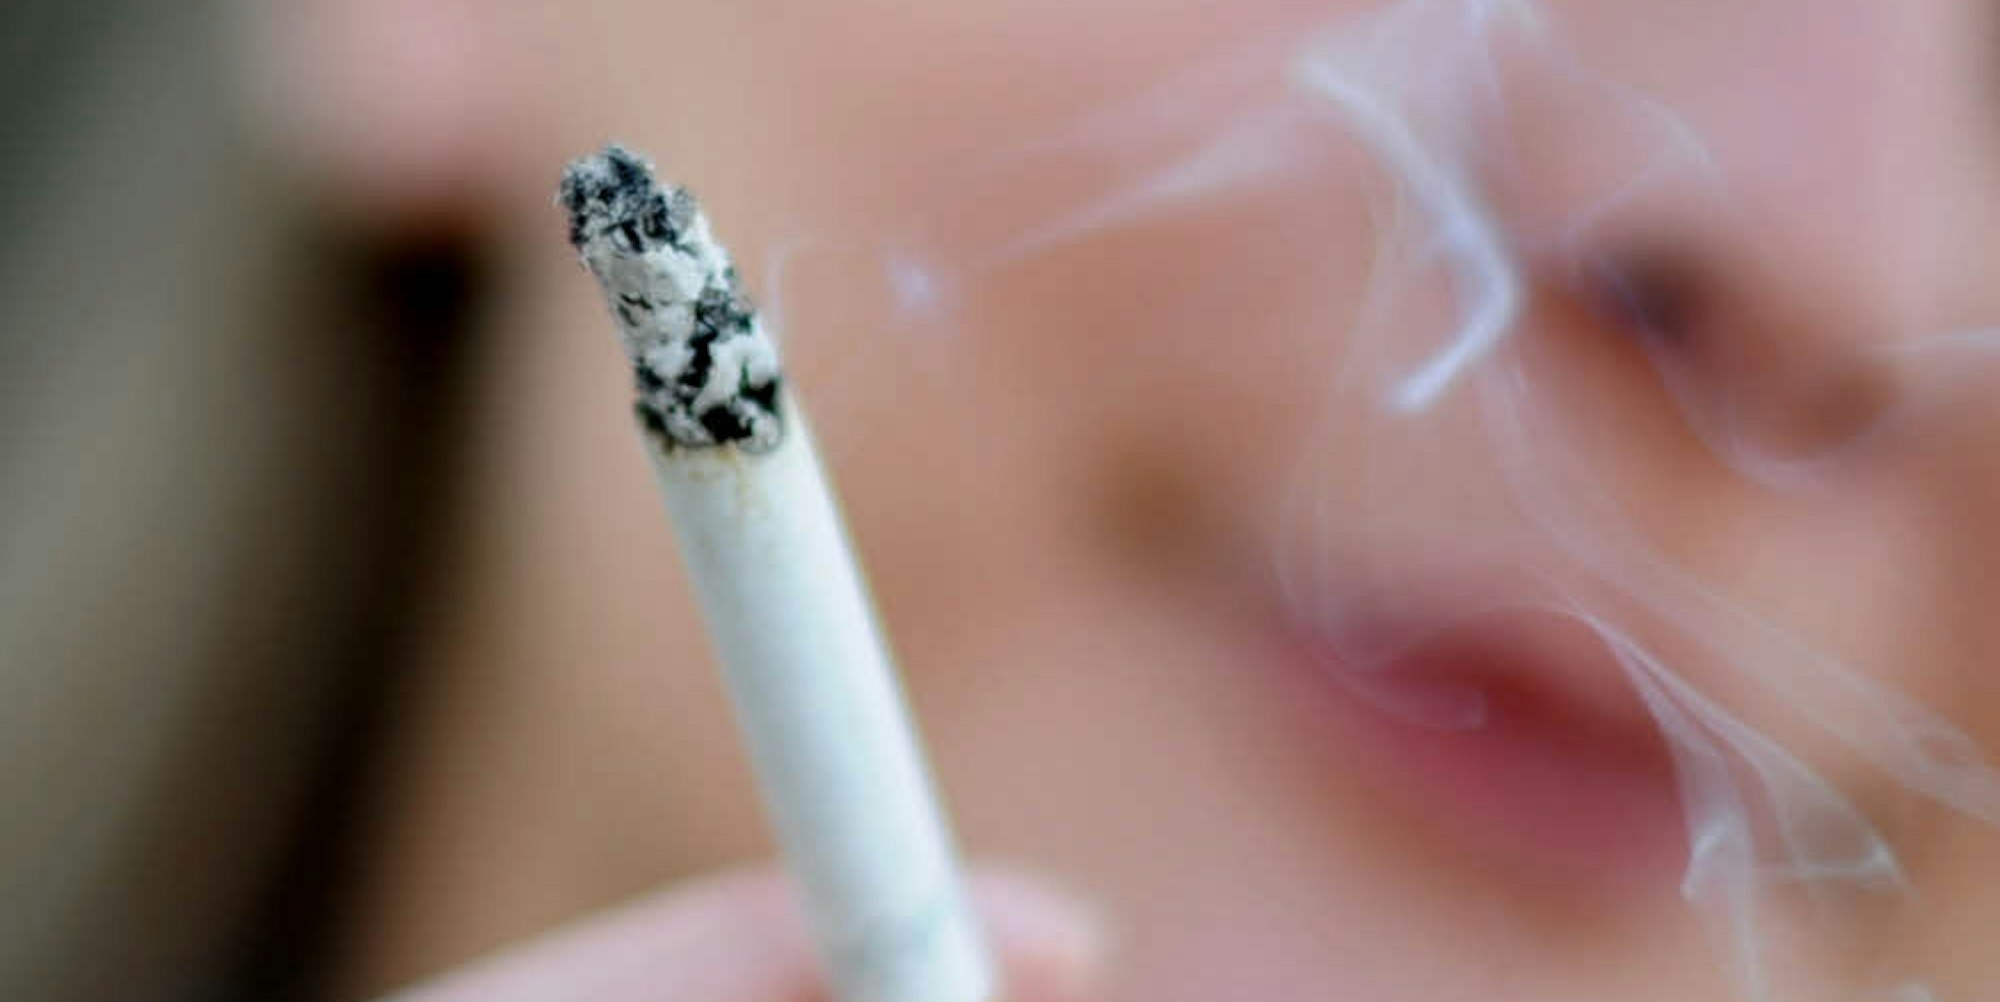 Raucher haben ein erhöhtes Risiko, an Lungenkrebs zu erkranken.